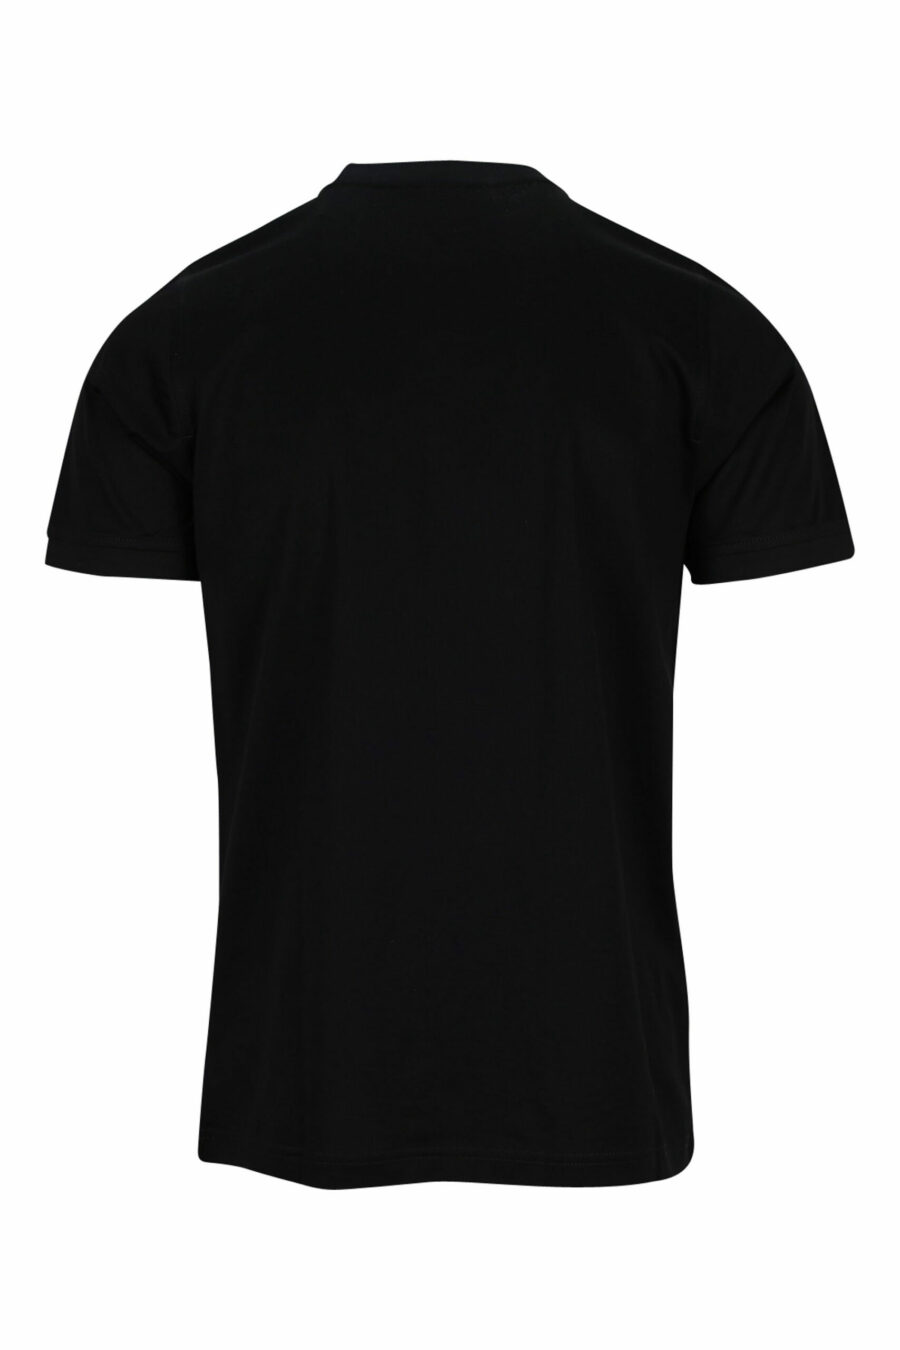 Schwarzes T-Shirt mit schwarzem Minilogue - 4062226400473 1 skaliert